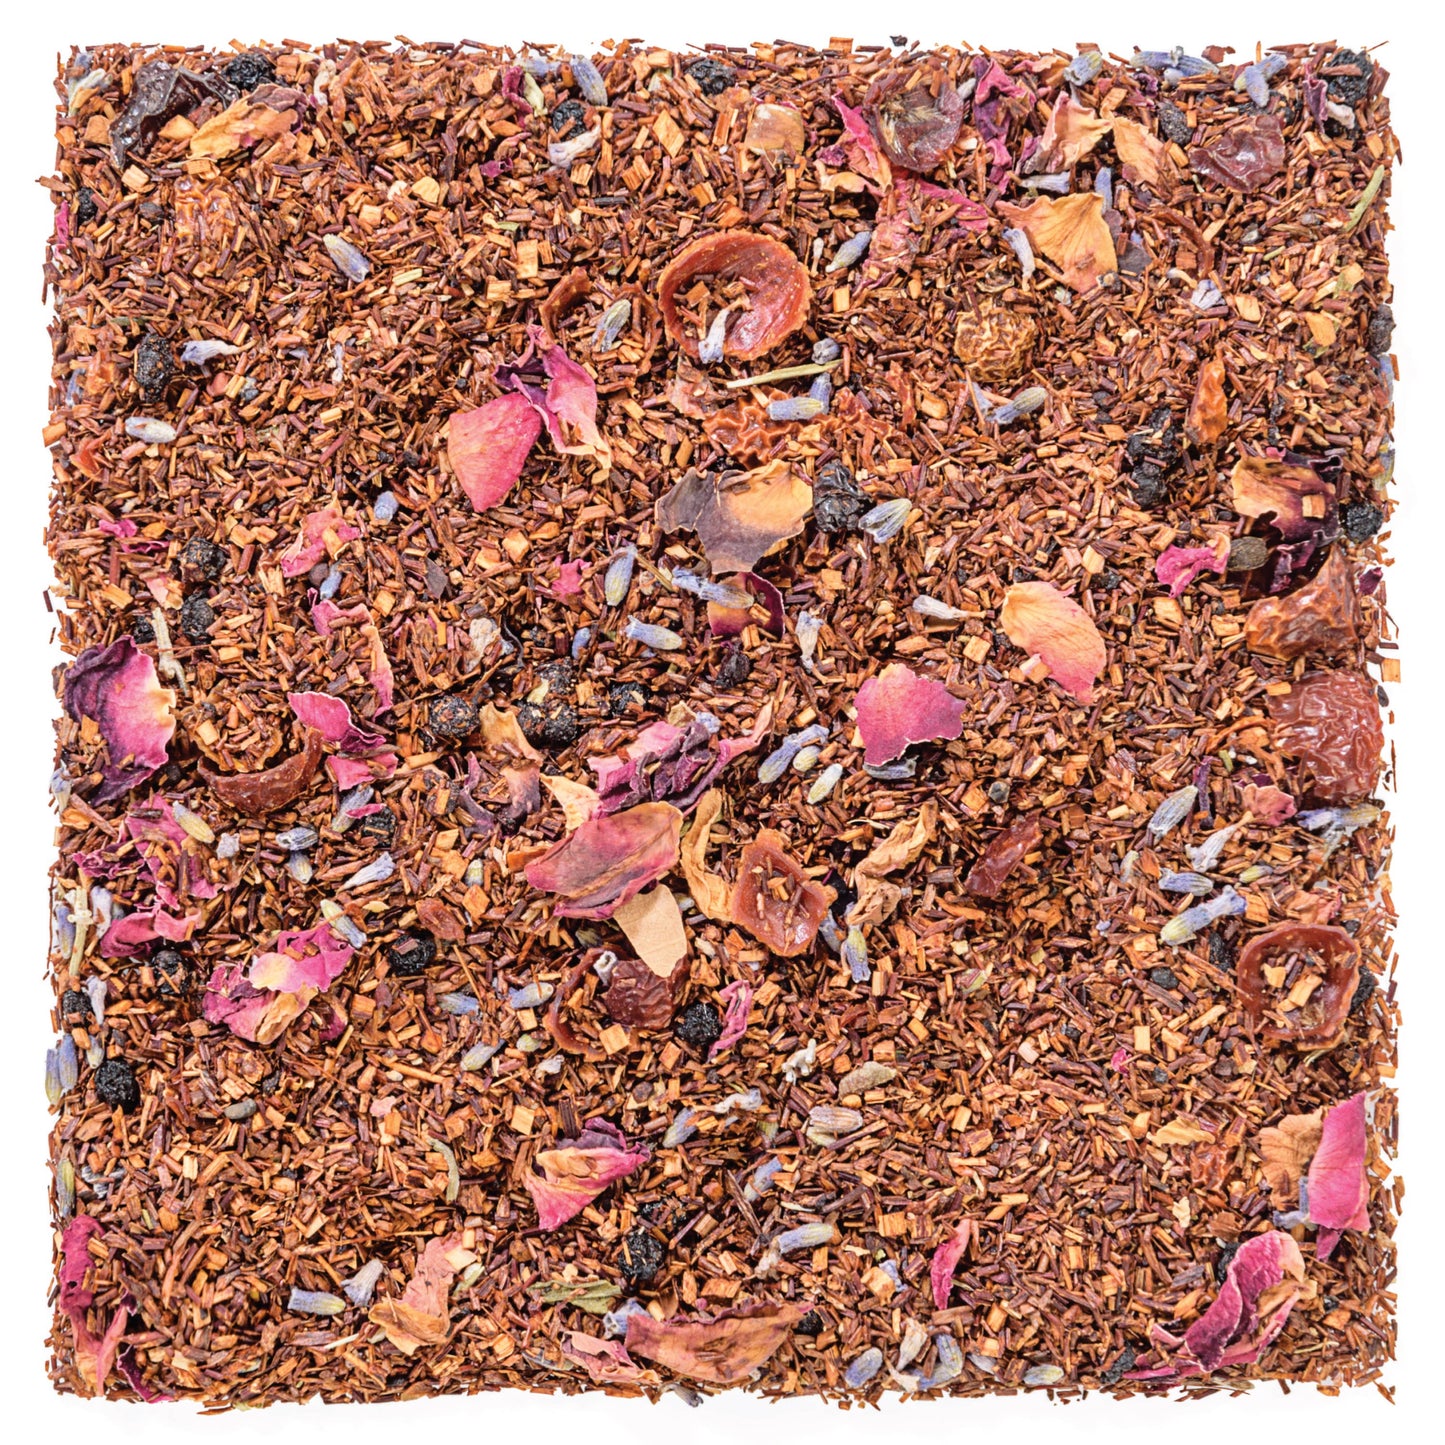 Tealyra - Roman Province - Rooibos Red Loose Leaf Tea 3.5oz